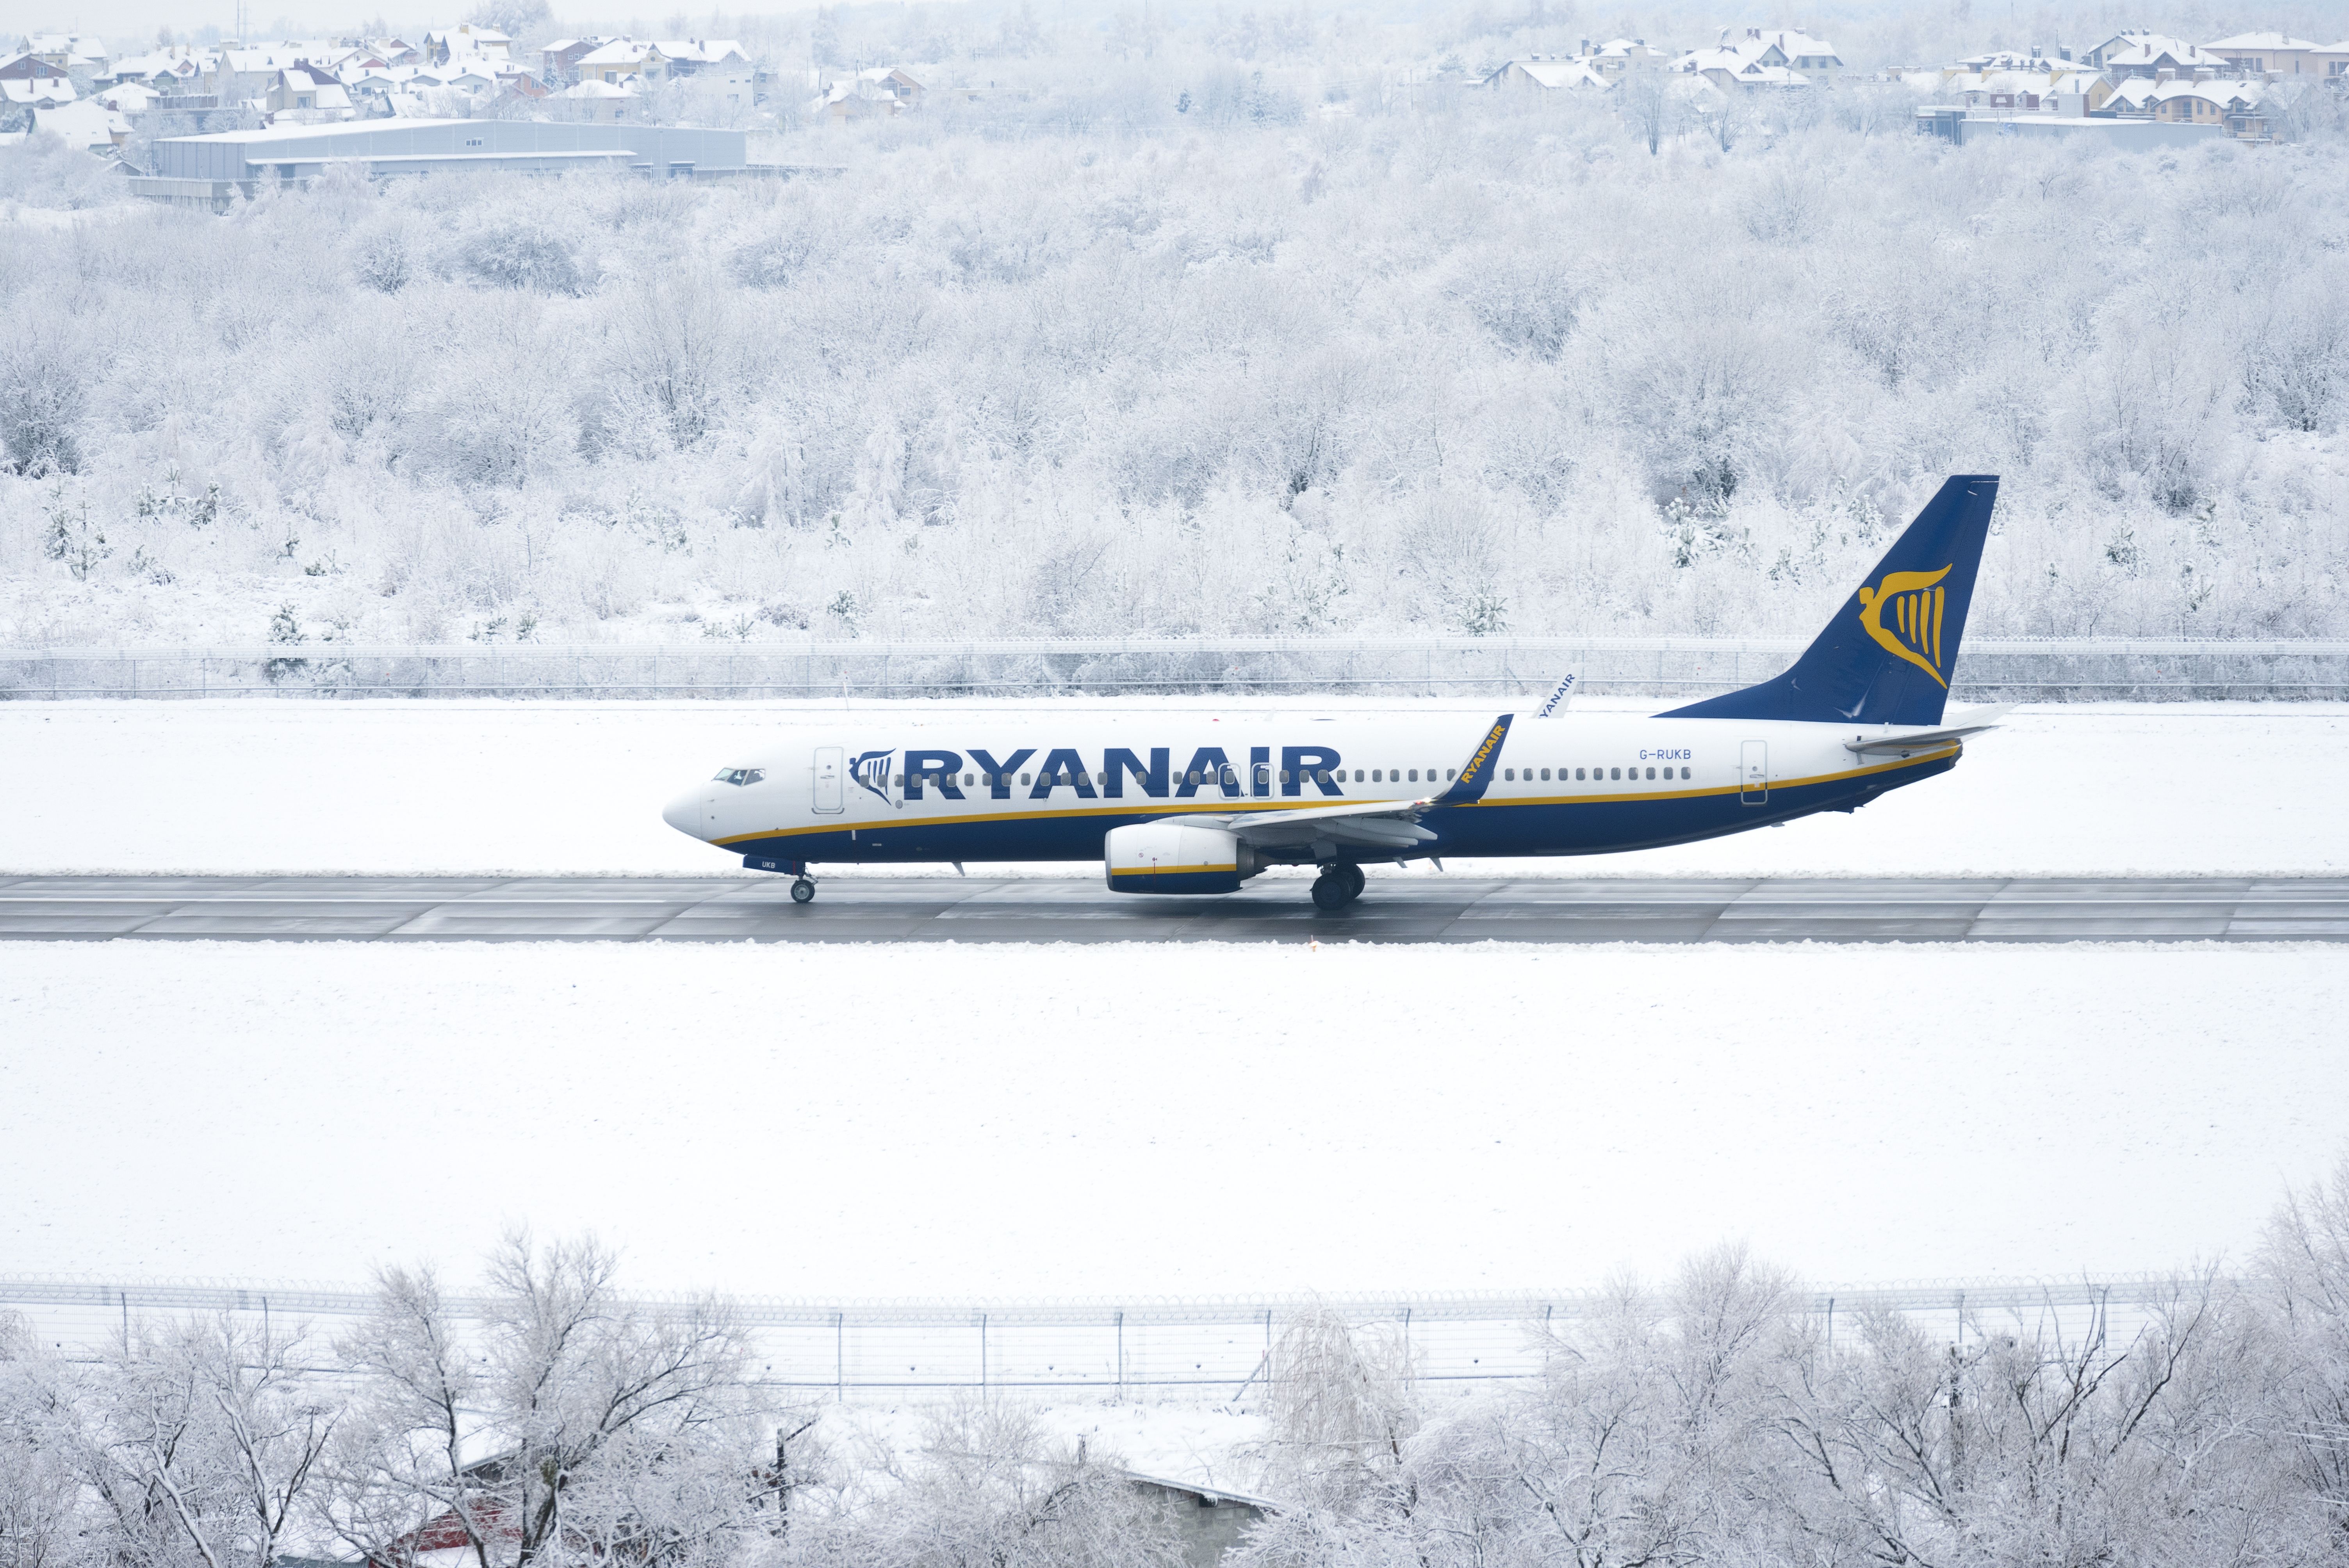 A Ryanair Boeing 737 landing on a snowy runway.